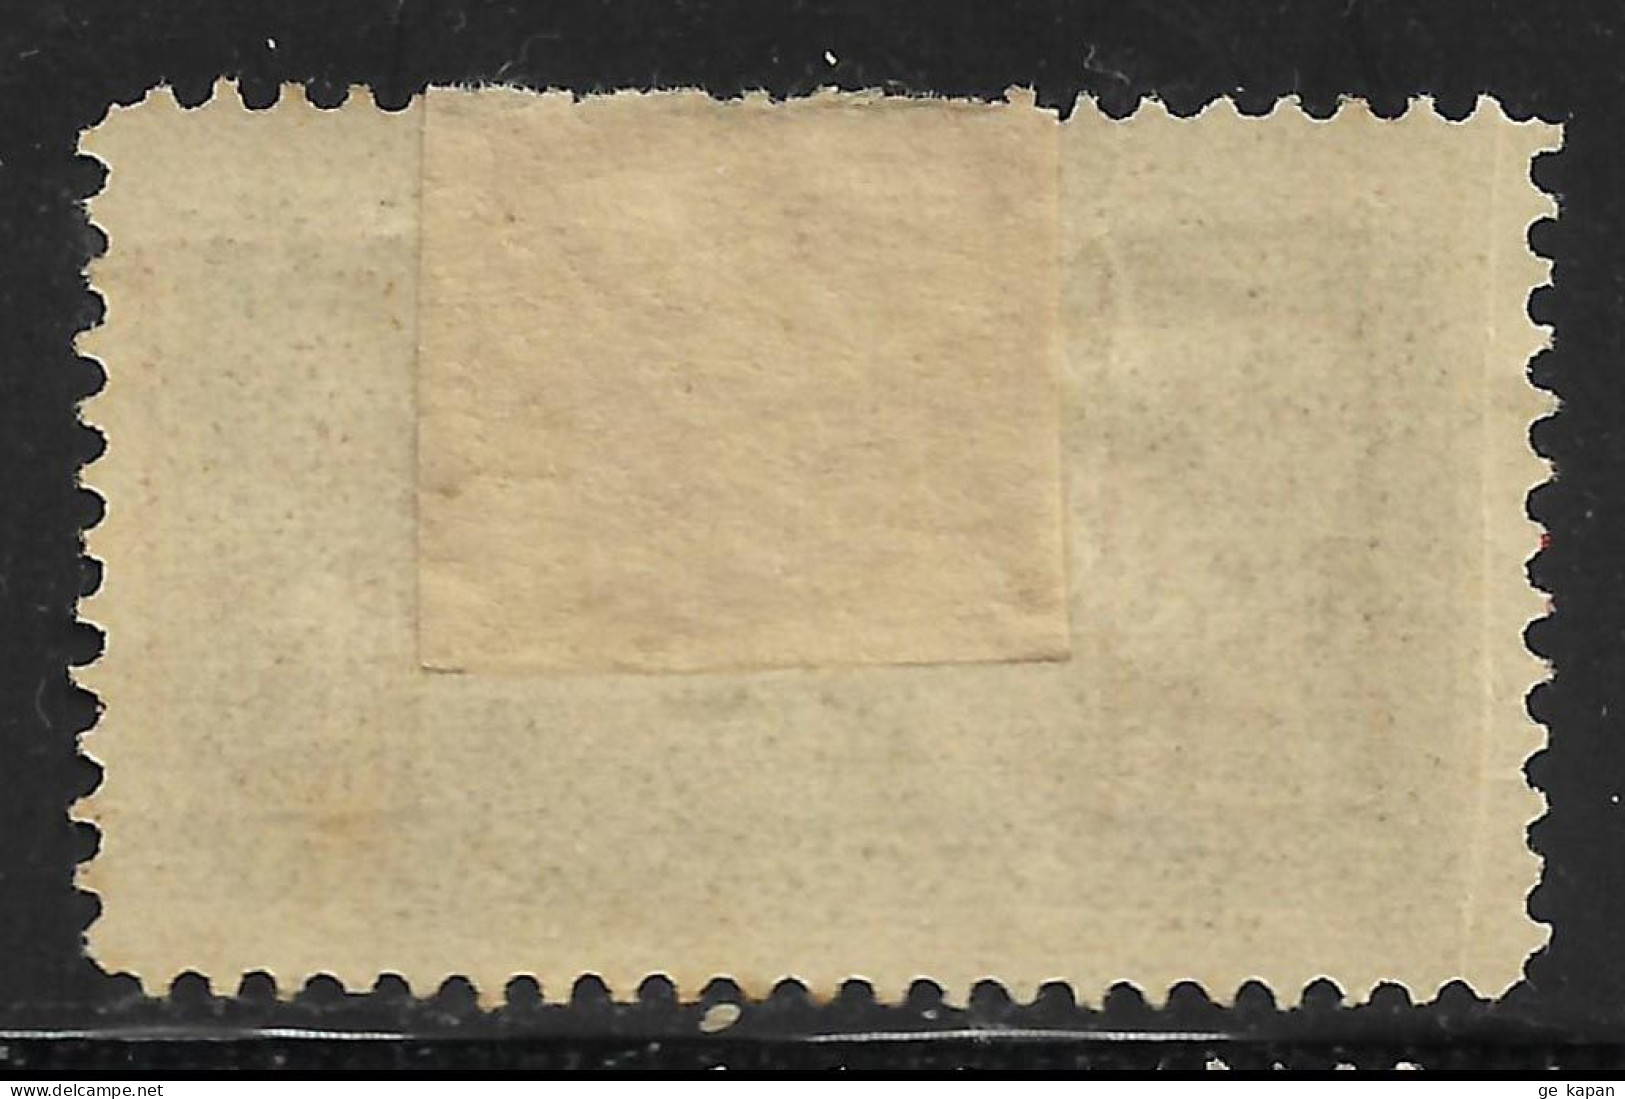 1925 SAUDI ARABIA HEJAZ King Ali Issue MLH Stamp (Michel # 109b) CV €4.50 - Saudi Arabia